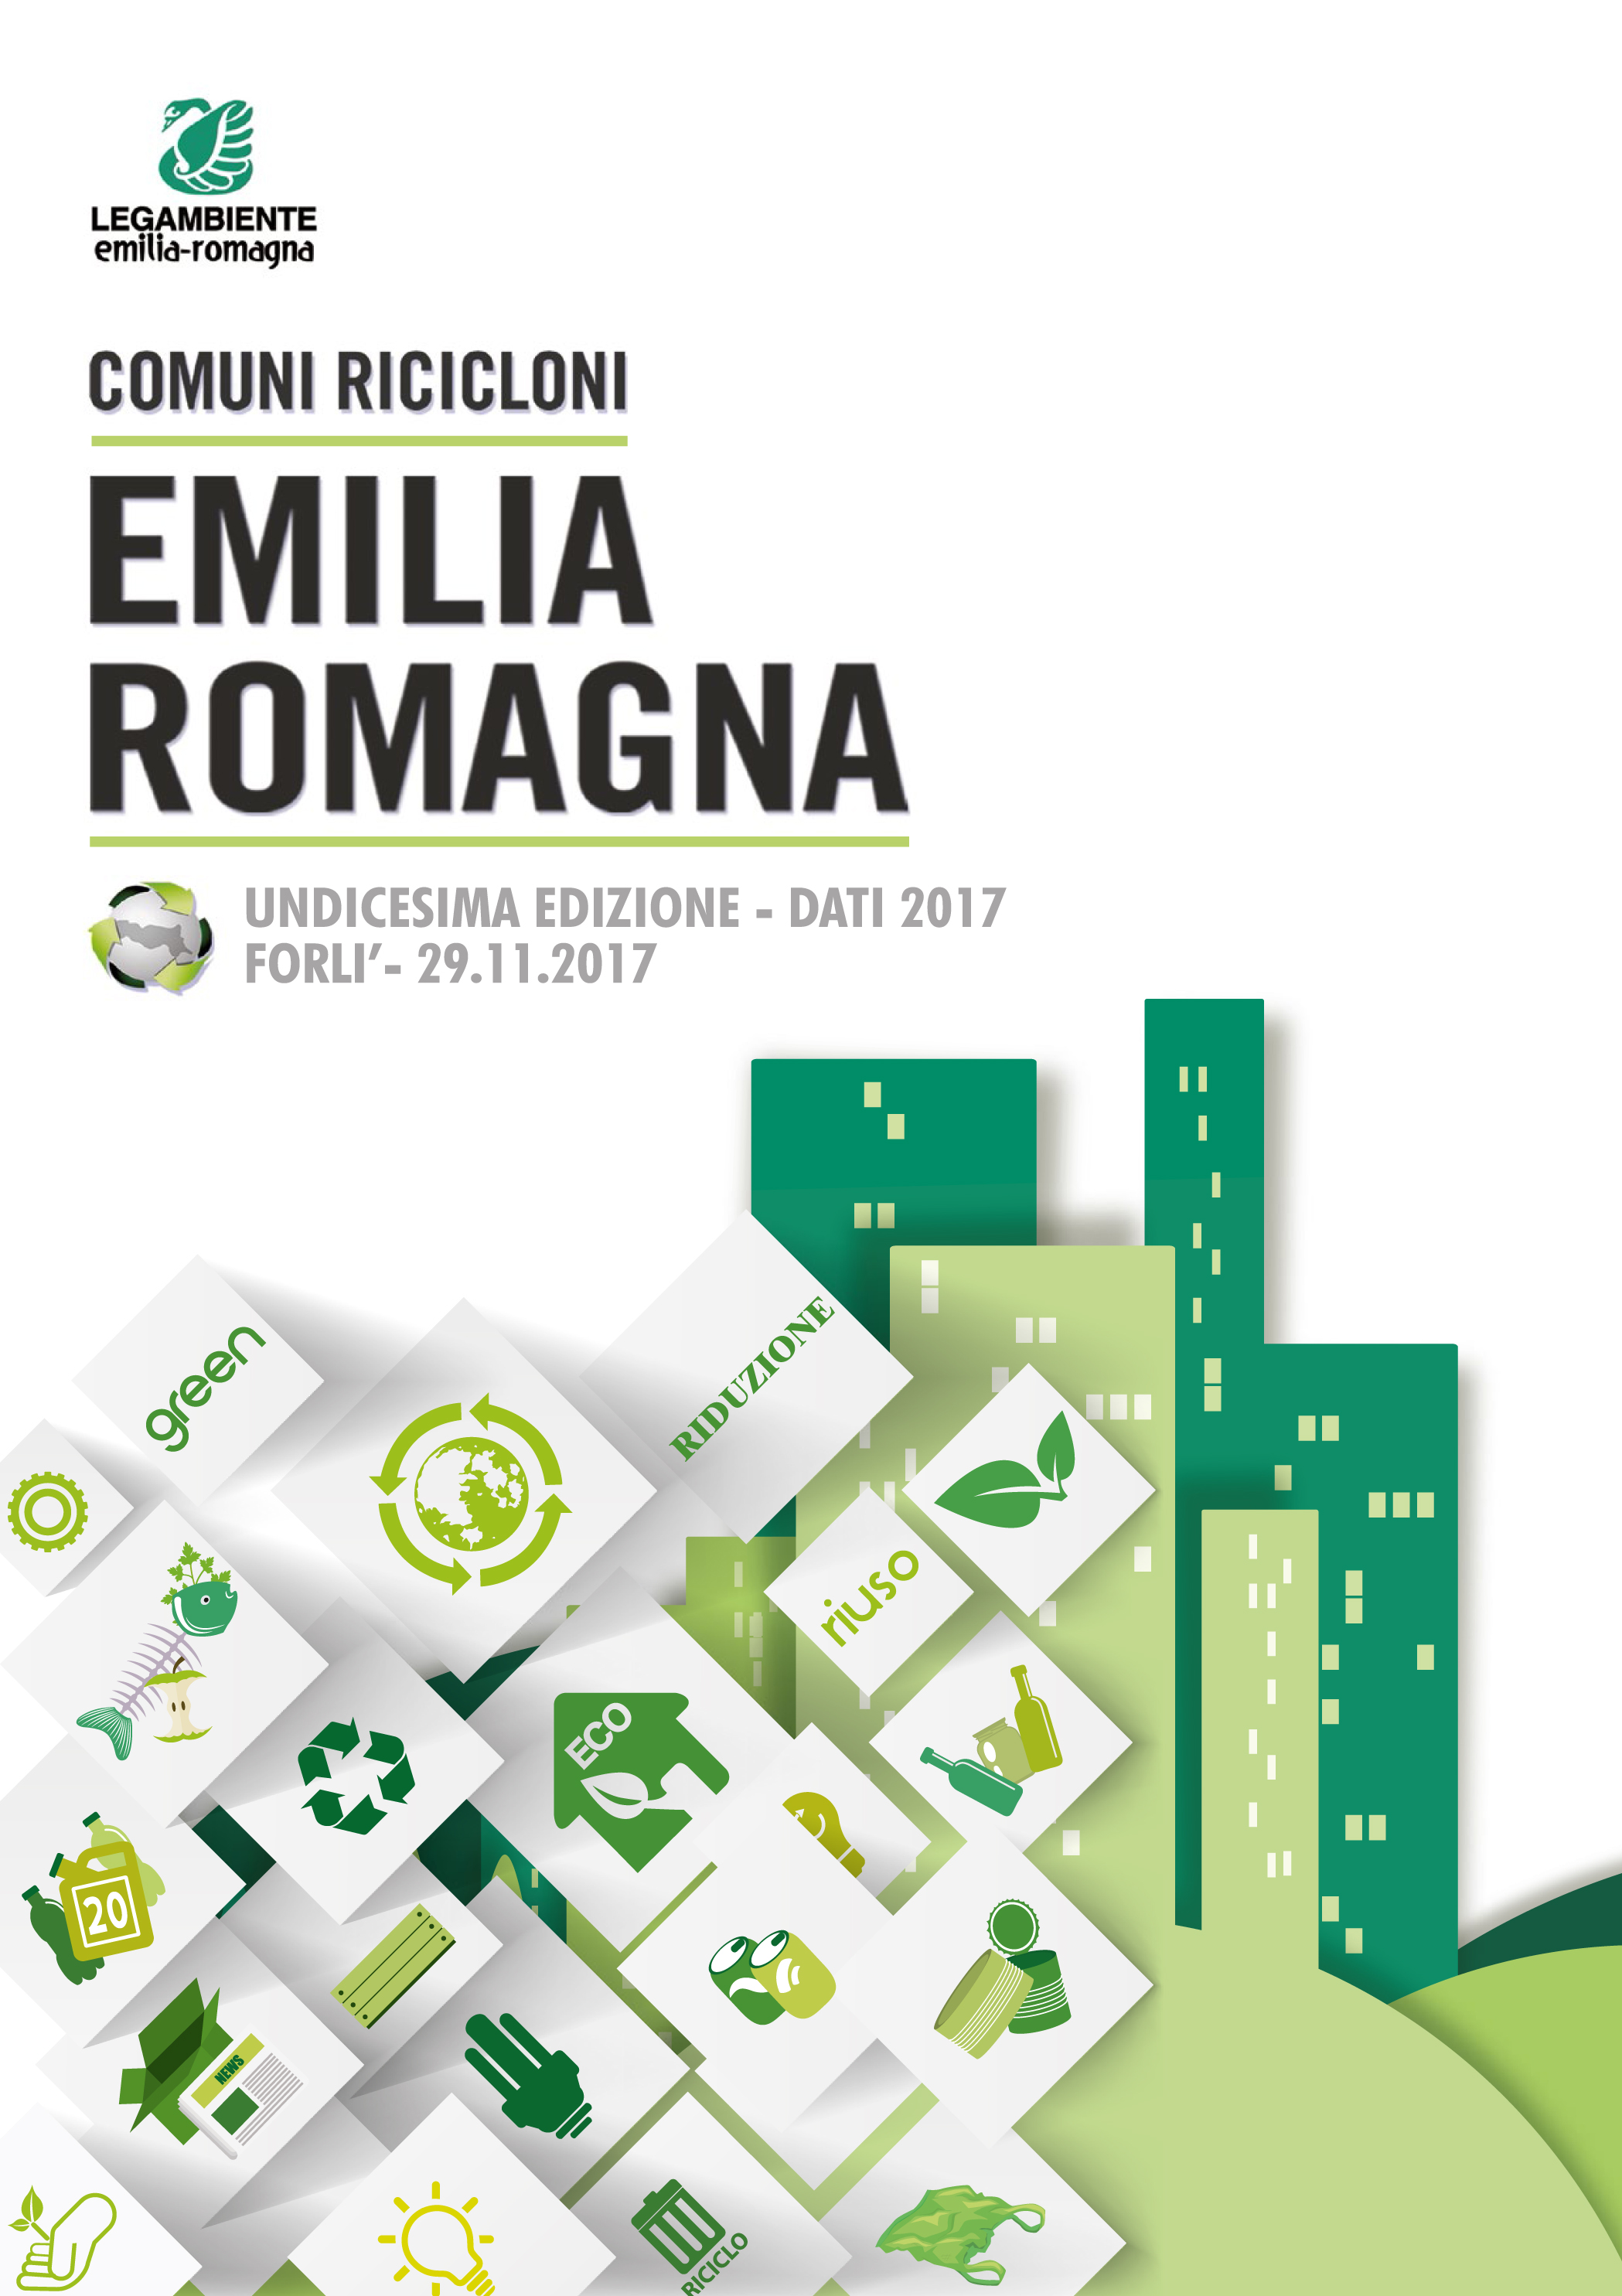 emilia_romagna-2018-11624716874.jpg